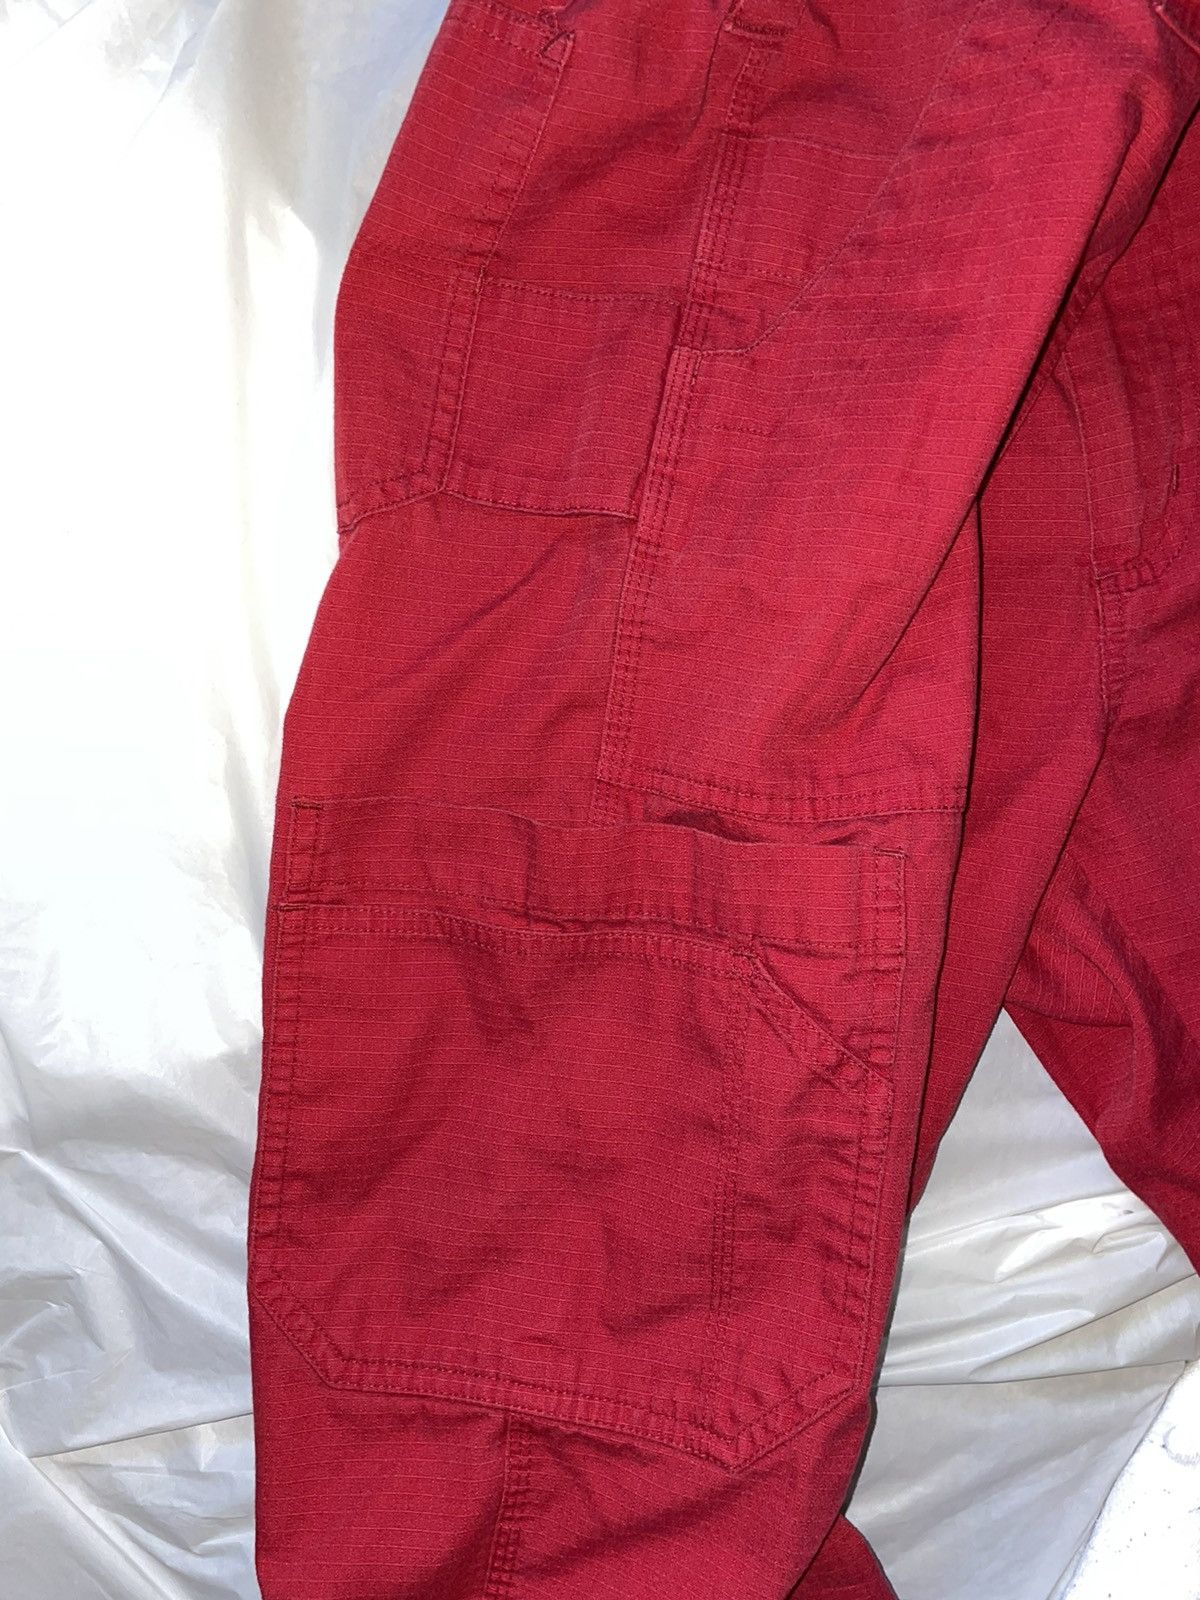 Carhartt Carhartt Lightweight Red Cargo Pants Size US 36 / EU 52 - 4 Thumbnail